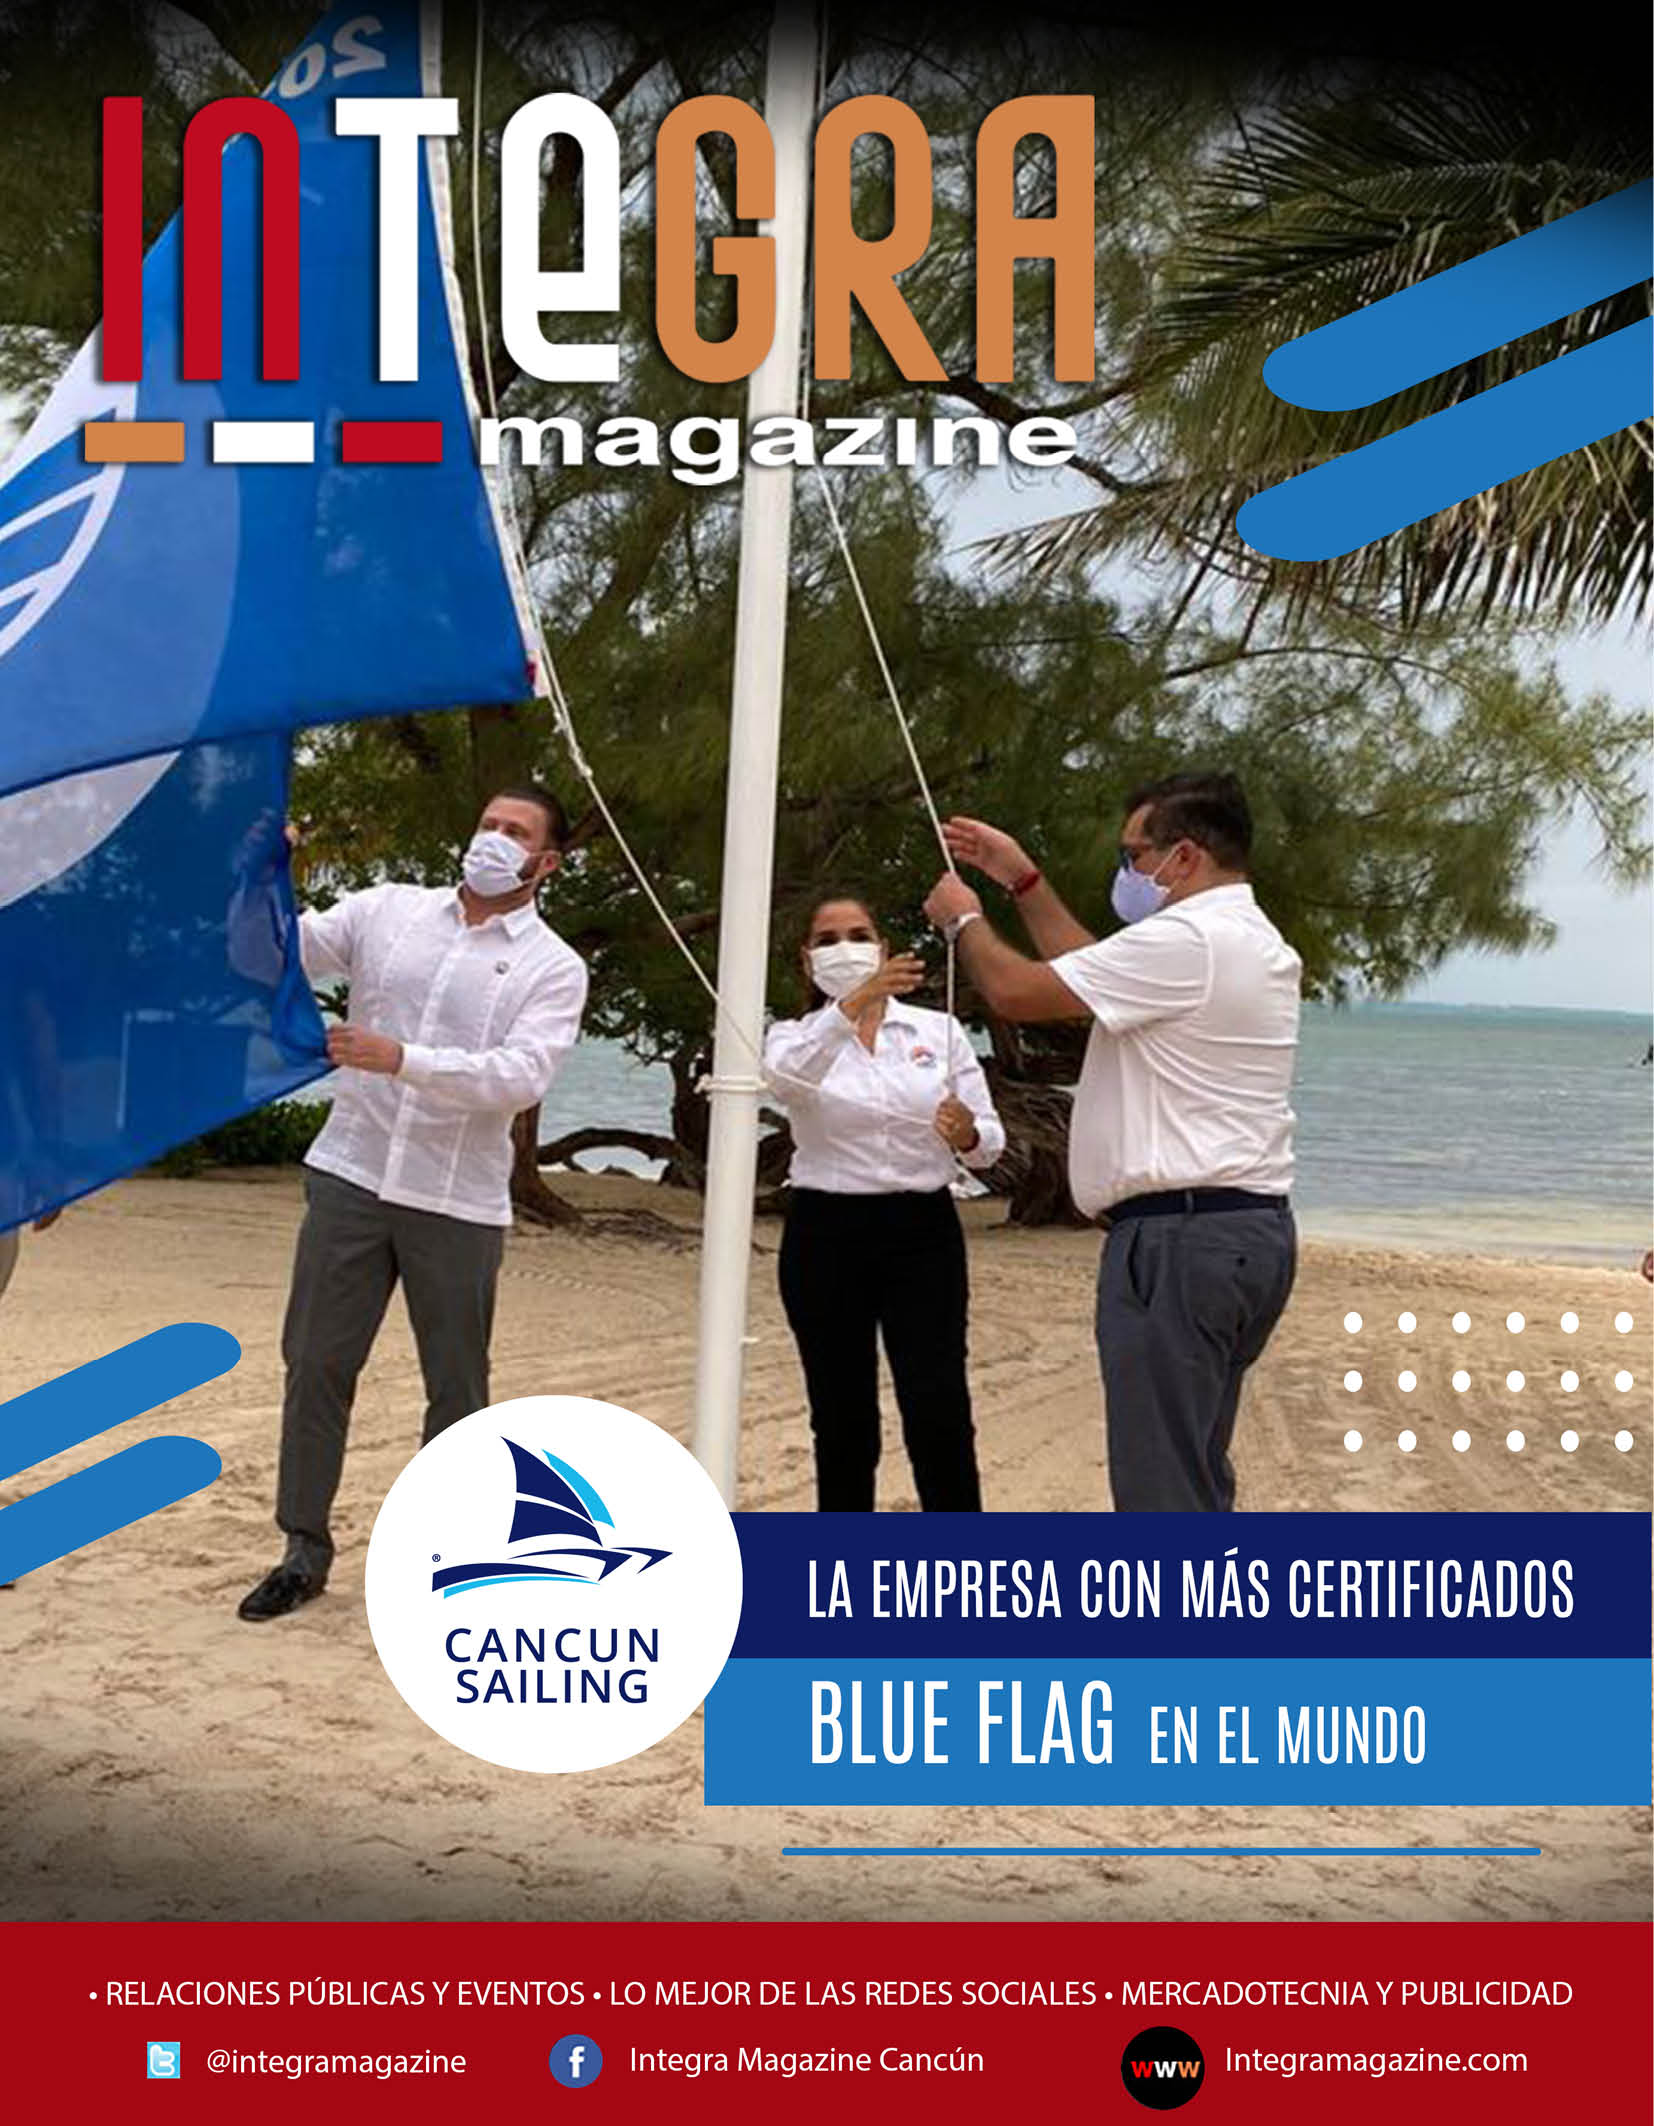 CANCUN SAILING, EMPRESA CON MÁS CERTIFICADOS BLUE FLAG EN EL MUNDO